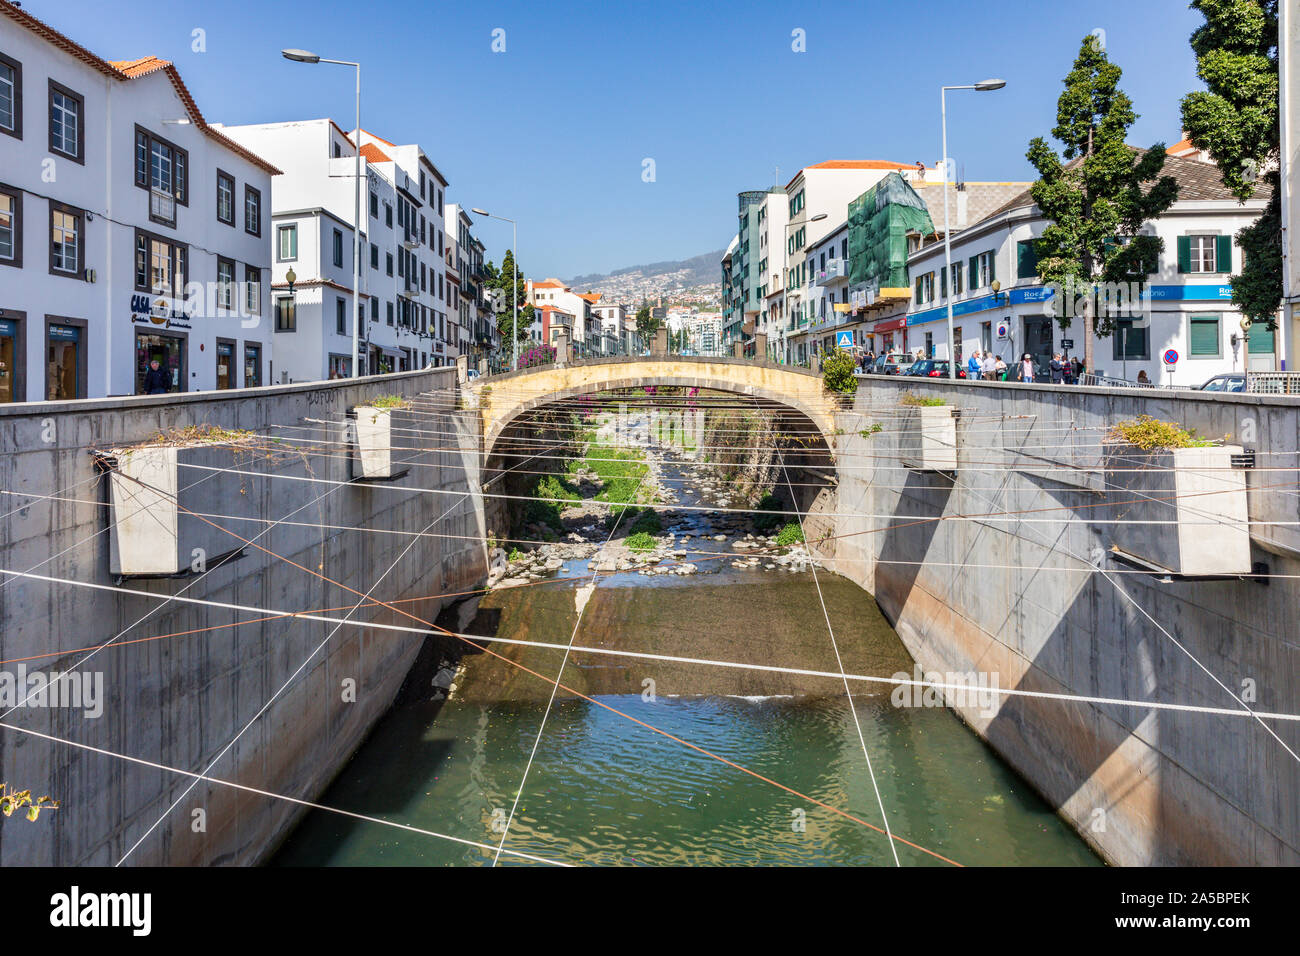 Un canal de dérivation de l'eau Ribeira de Santa Luzia, Funchal, Madeira, Portugal Banque D'Images